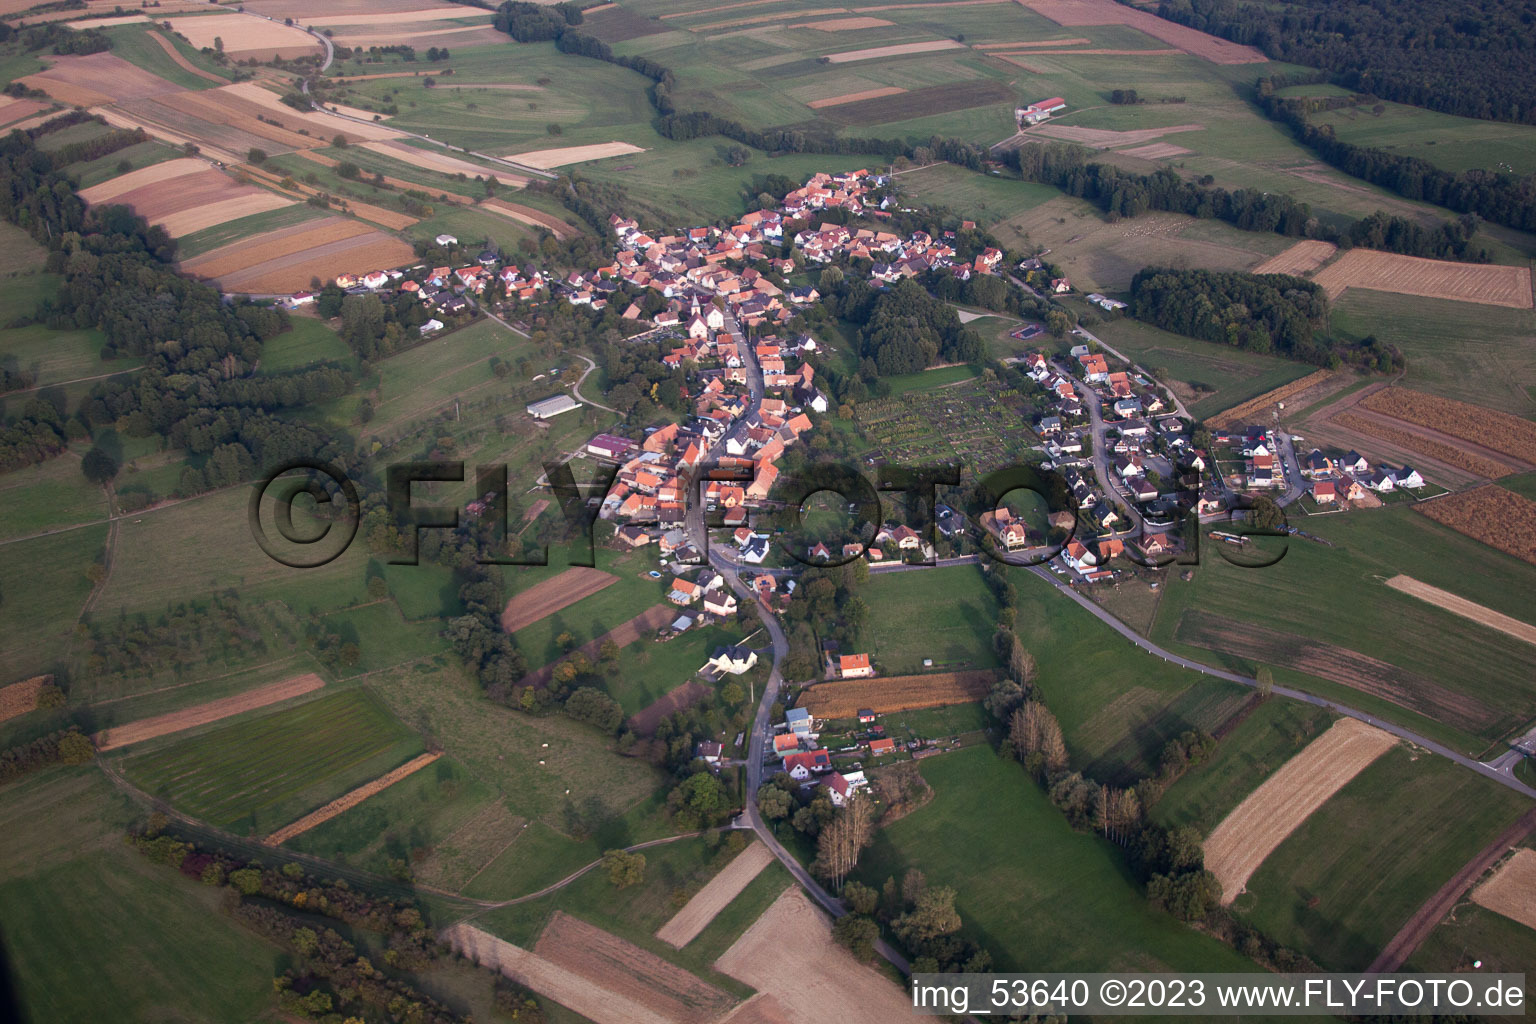 Griesbach im Bundesland Bas-Rhin, Frankreich aus der Luft betrachtet